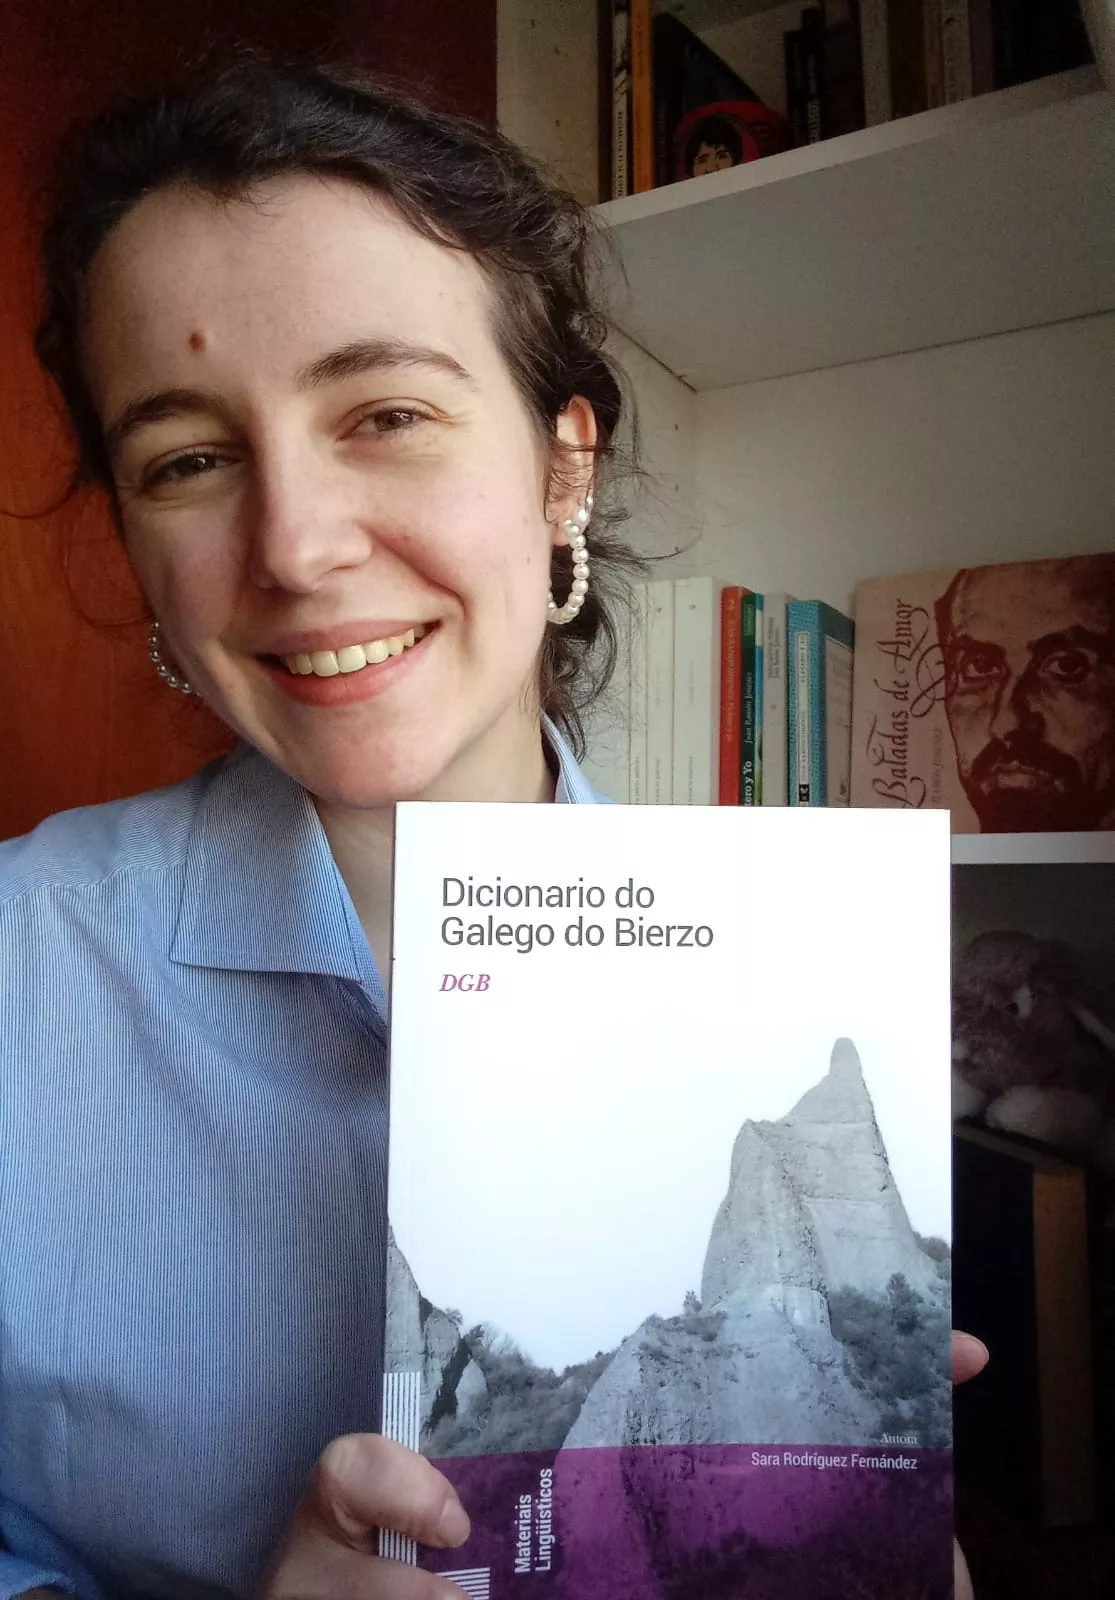  'O Dicionario do Galego do Bierzo' de Sara Rodríguez (1)